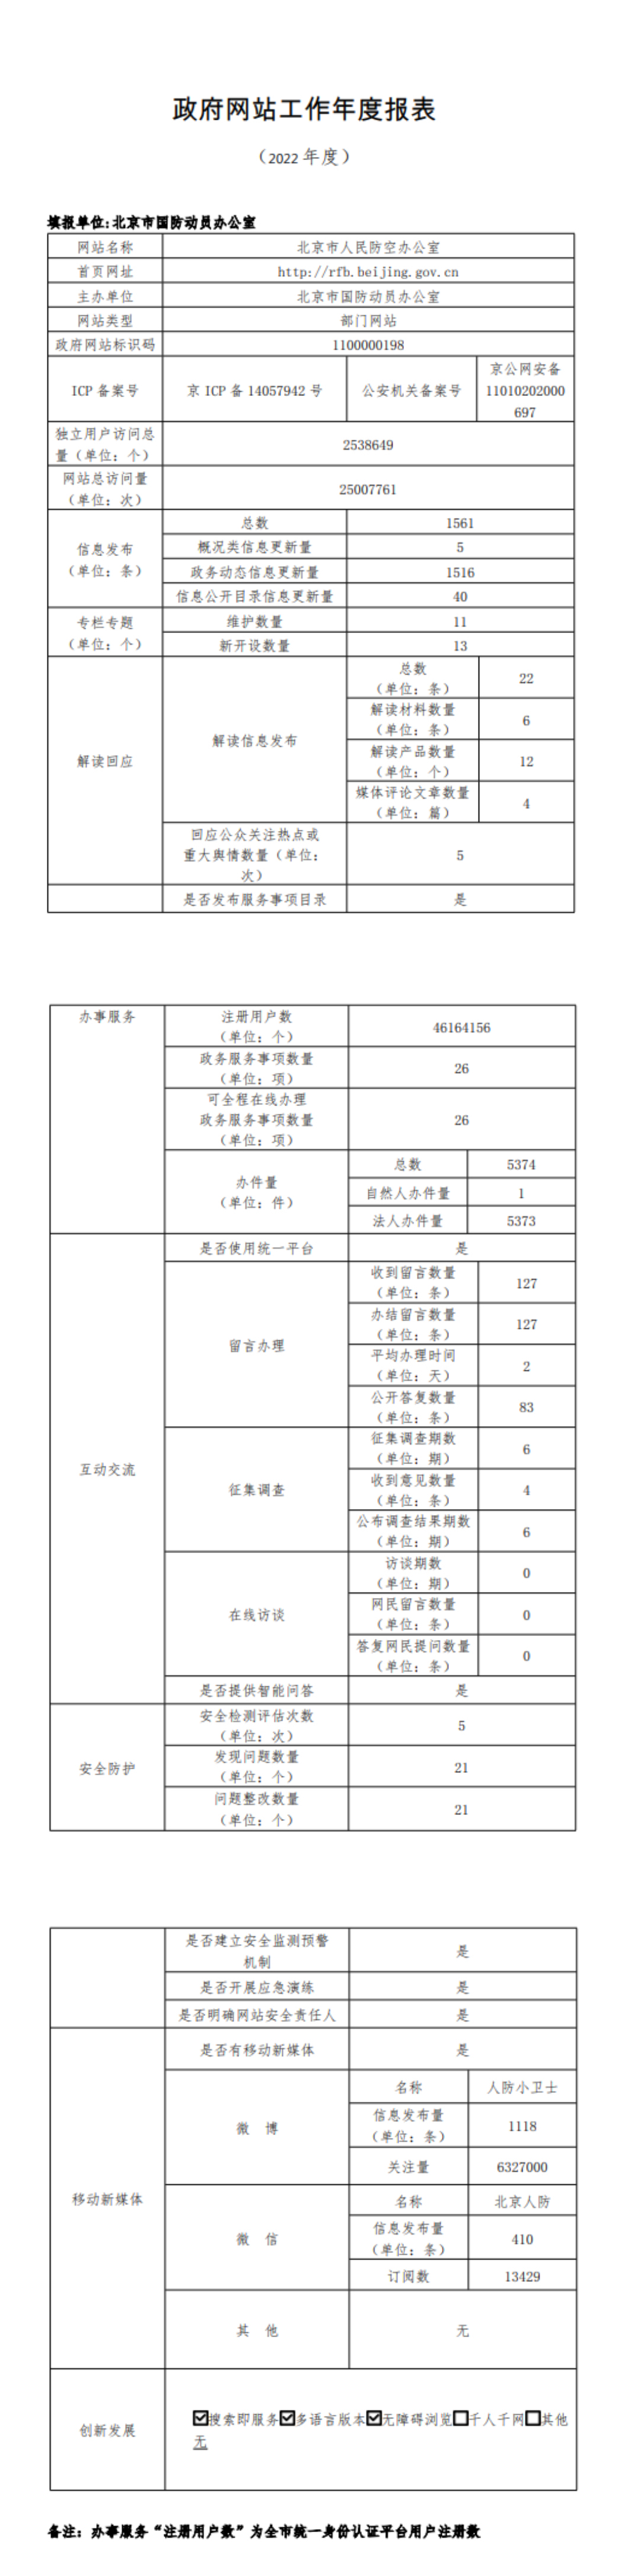 北京市人民防空辦公室2022年政府網站年度工作報表